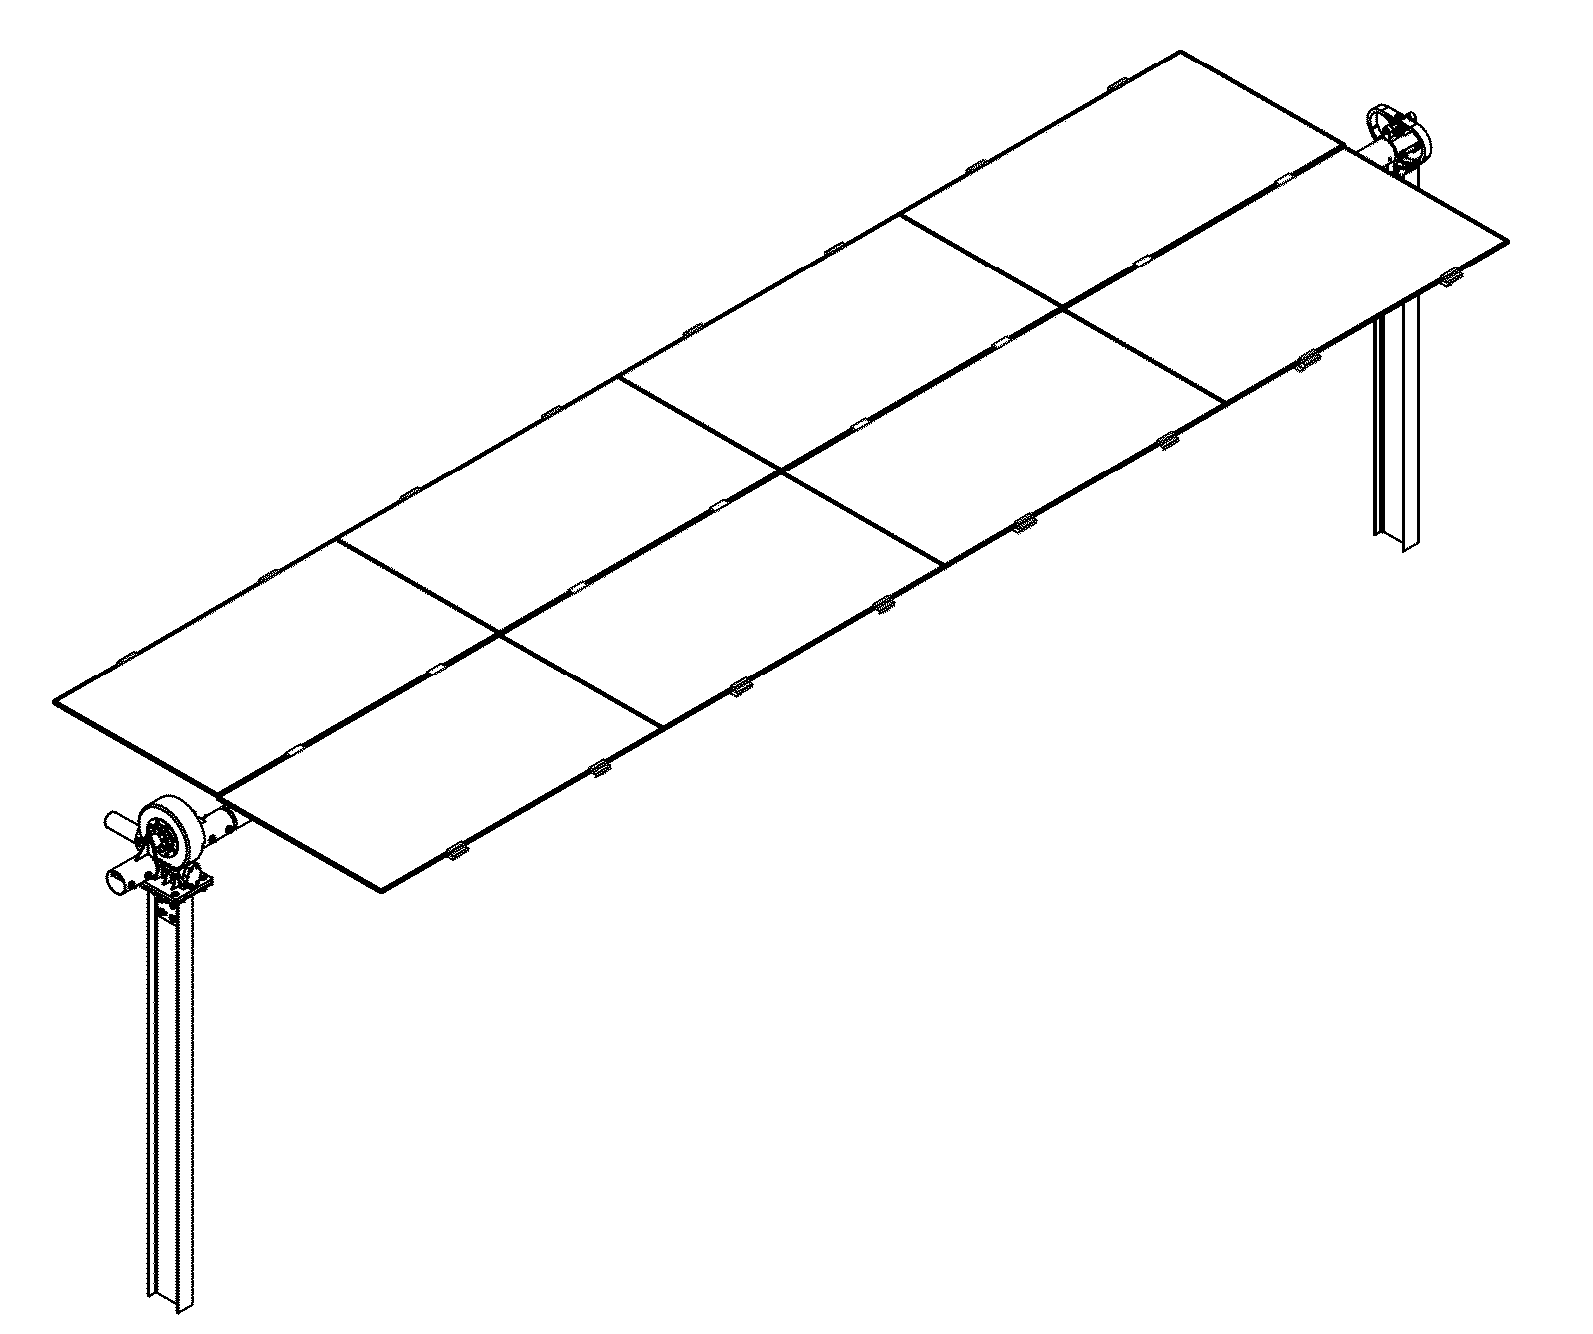 Horizontal balanced solar tracker